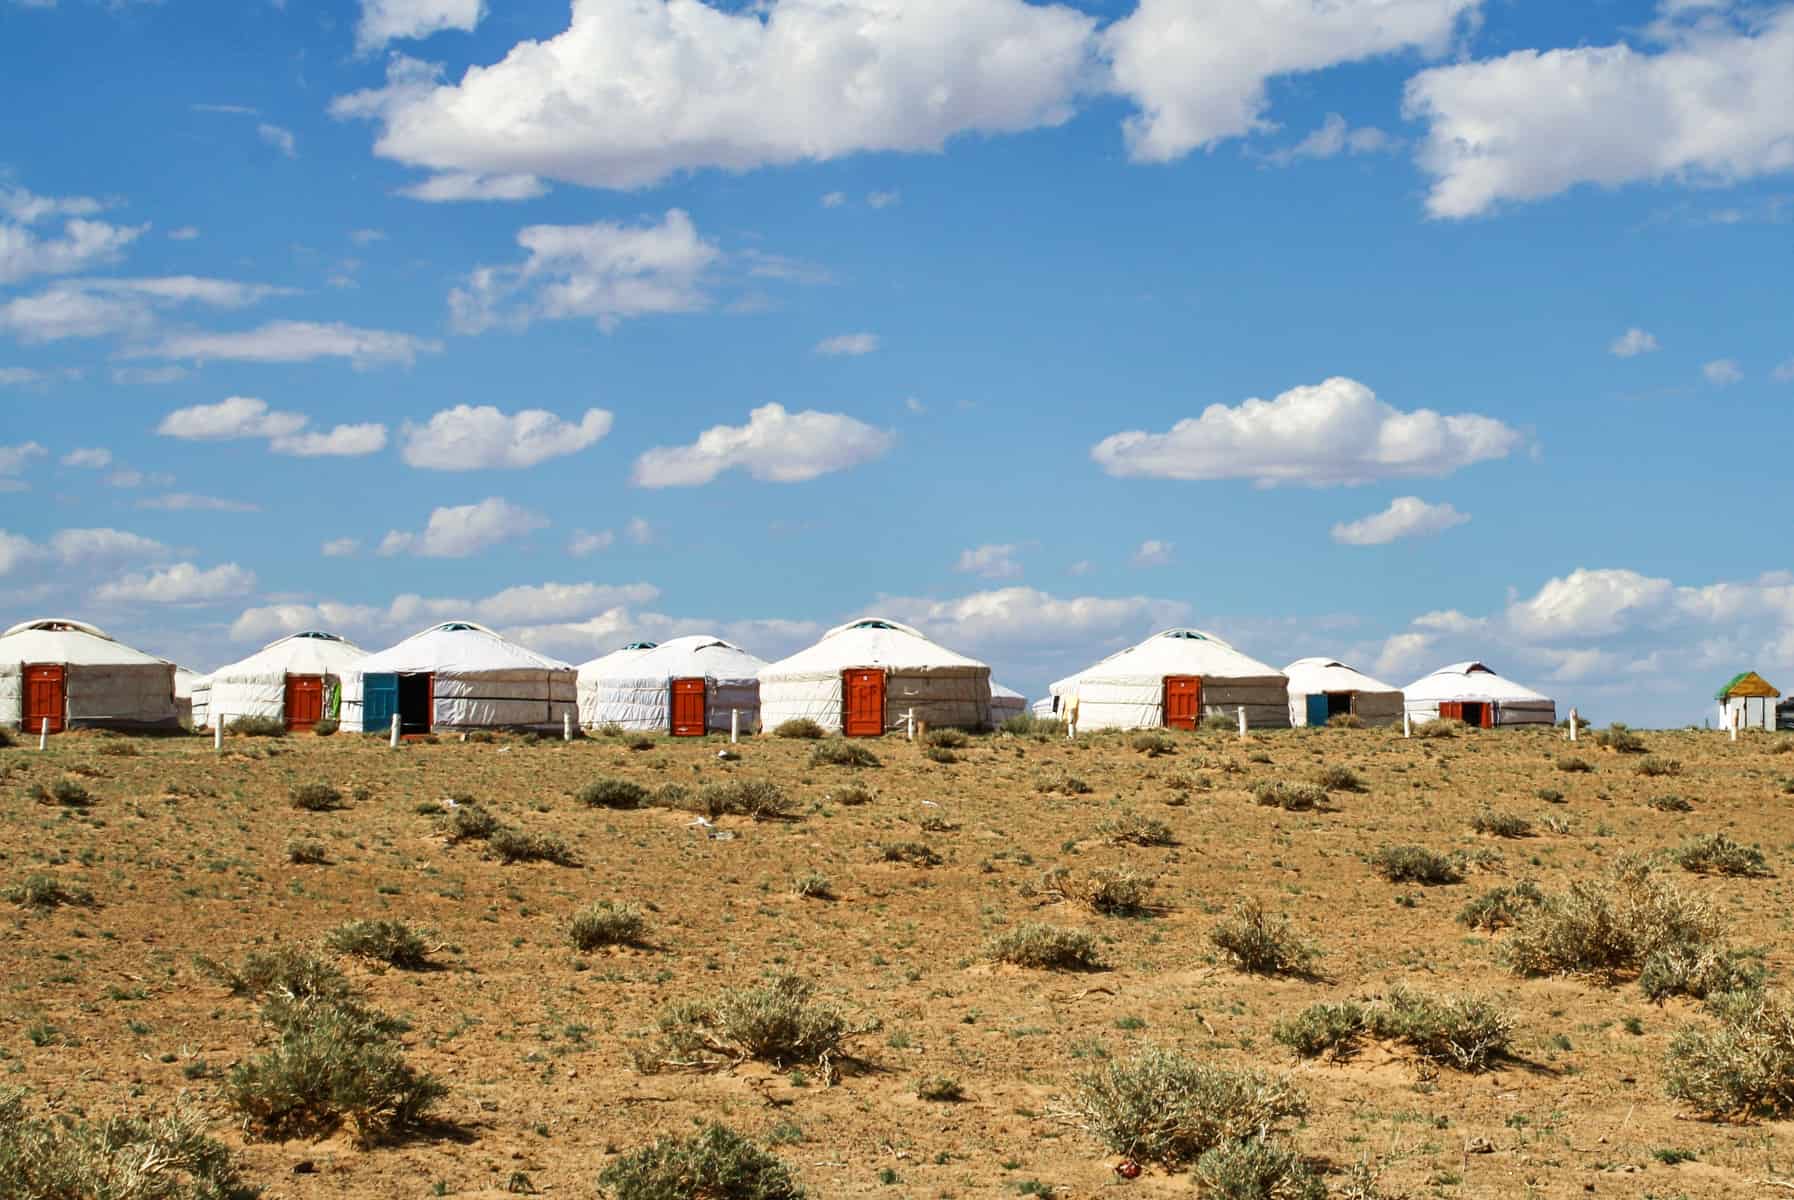 Una docena de gers blancos se alinean en la cima de una colina en el desierto de Gobi, Mongolia